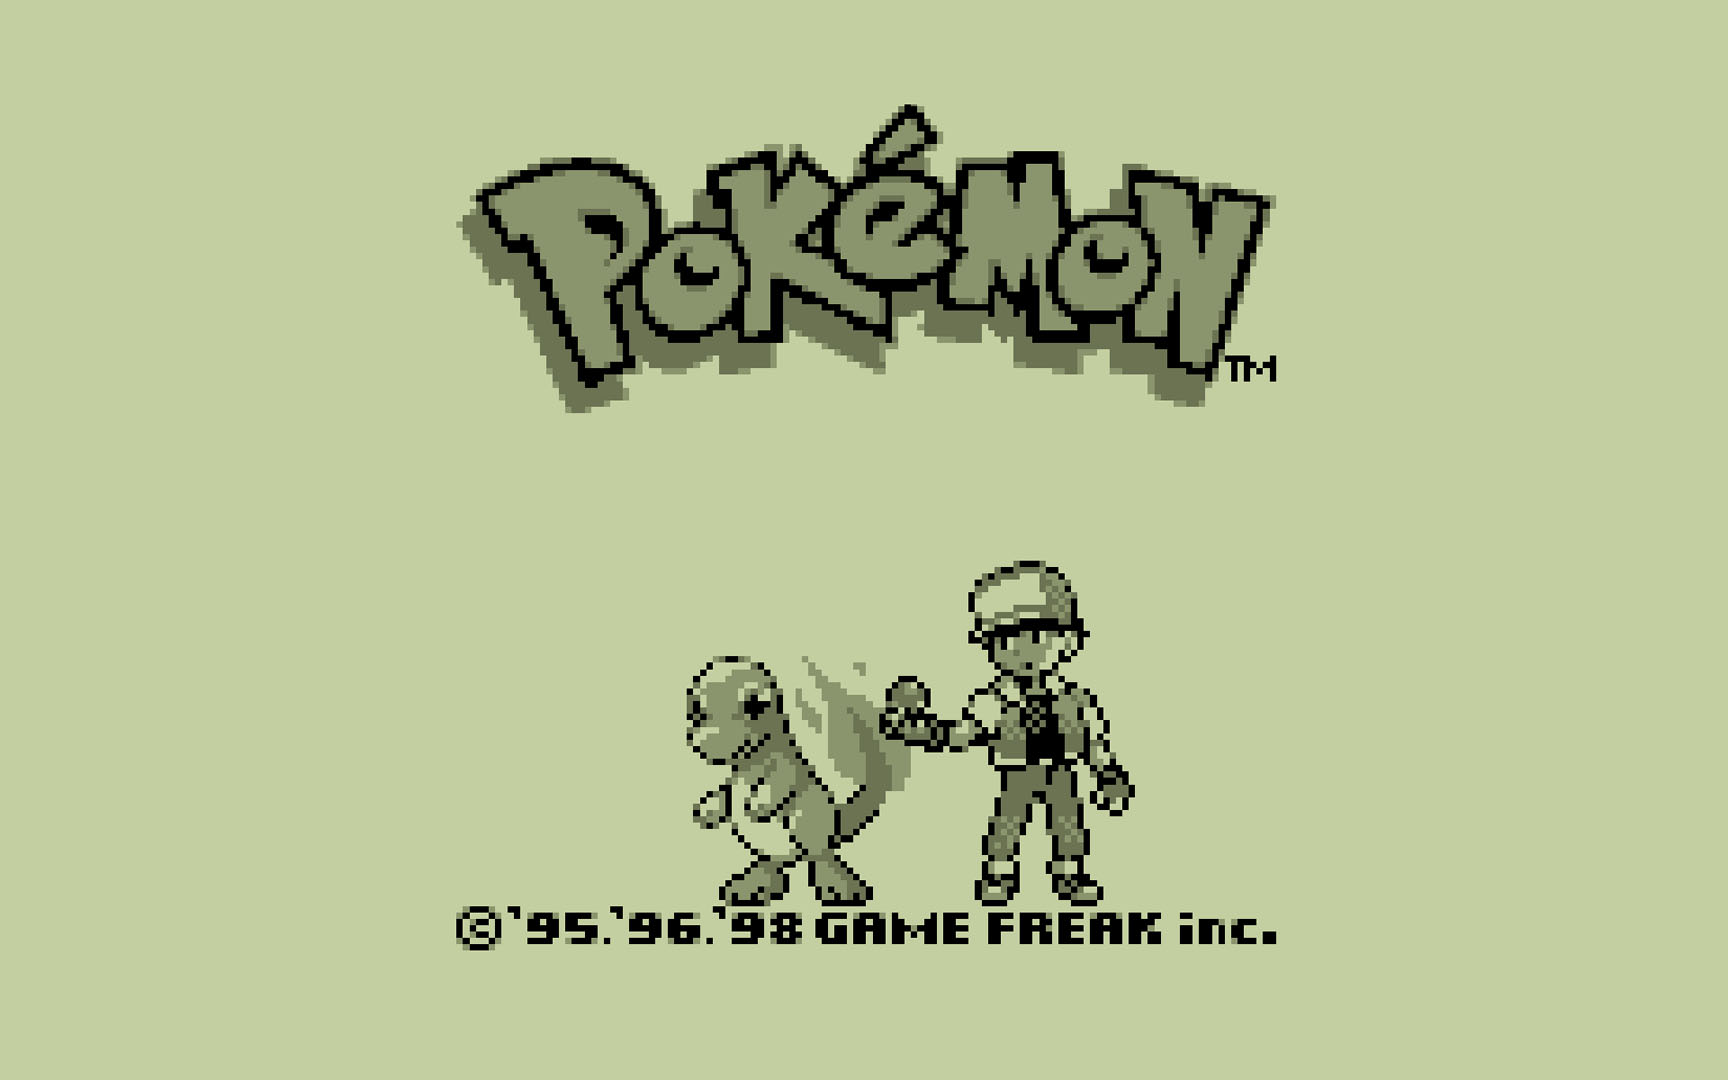 Gameboy Pokemon Nintendo Games Wallpaper Image Featuring